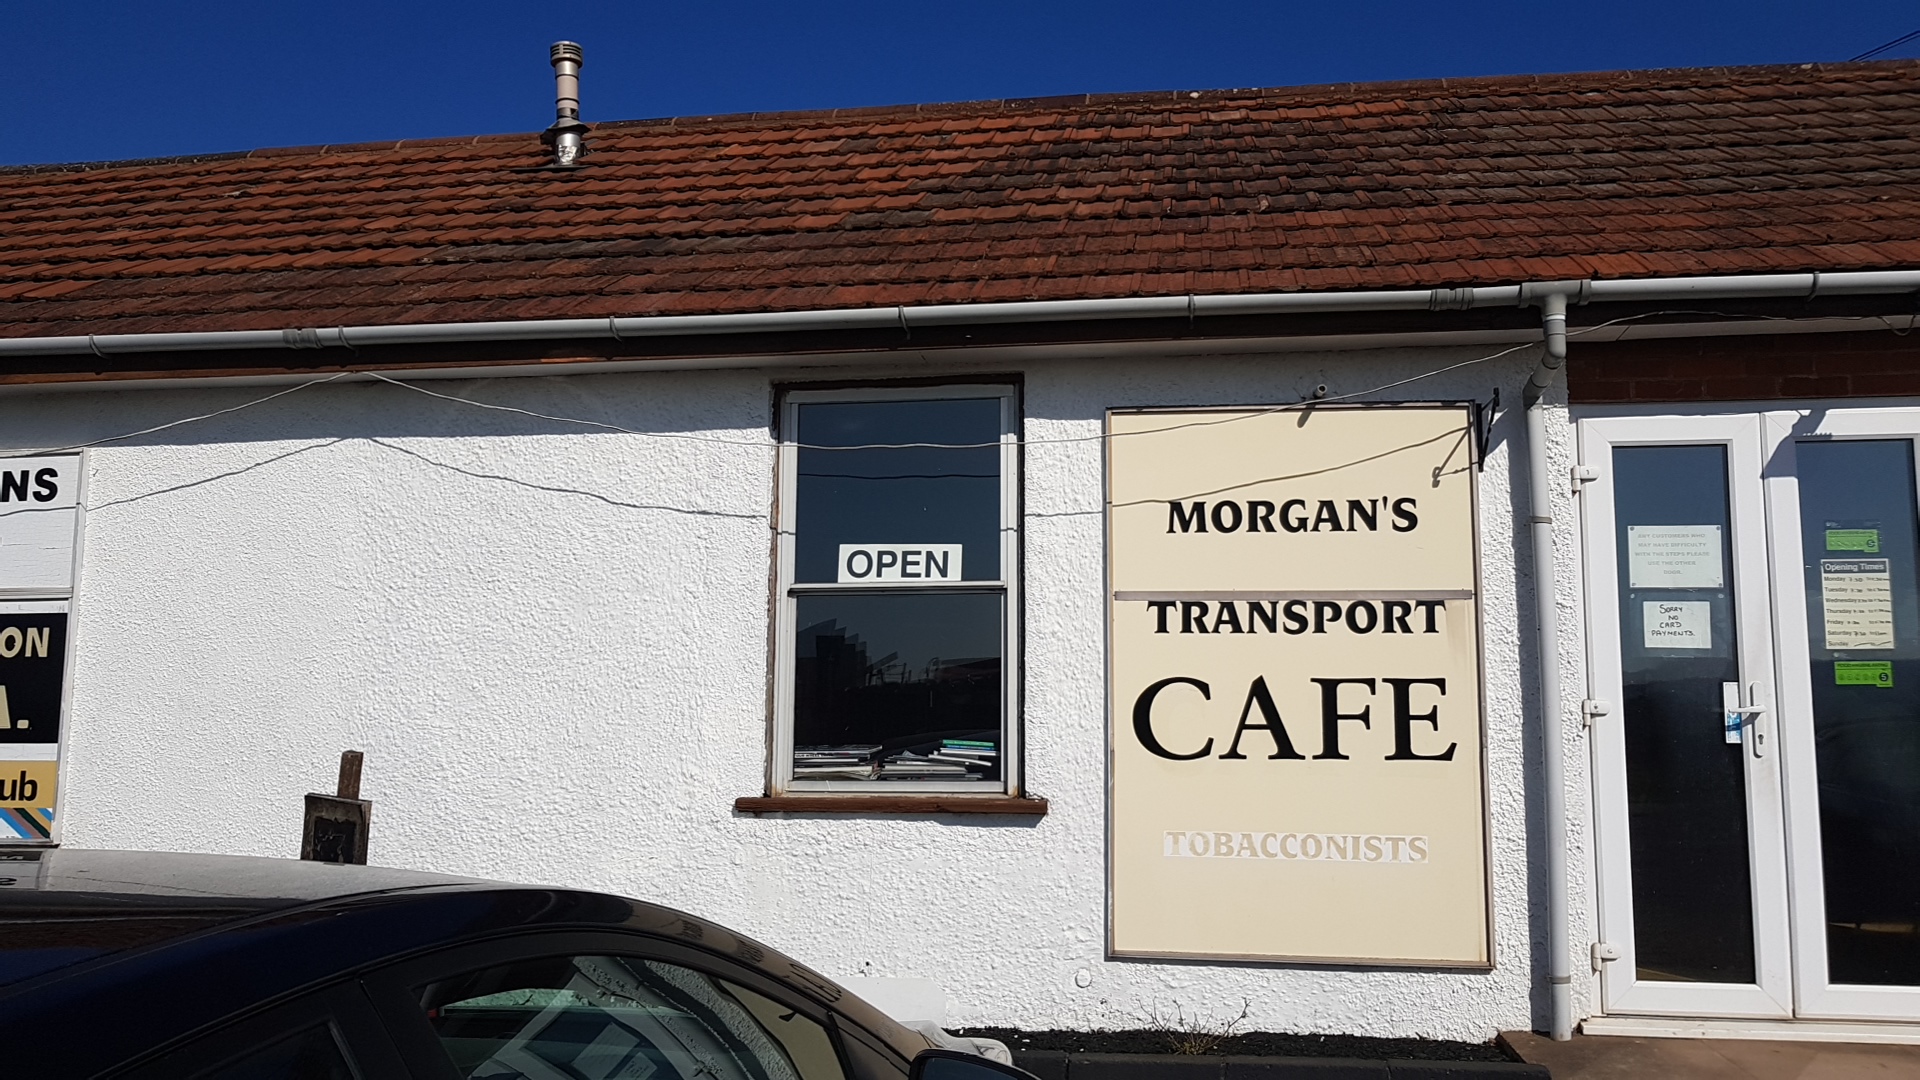 Morgan's Transport Café